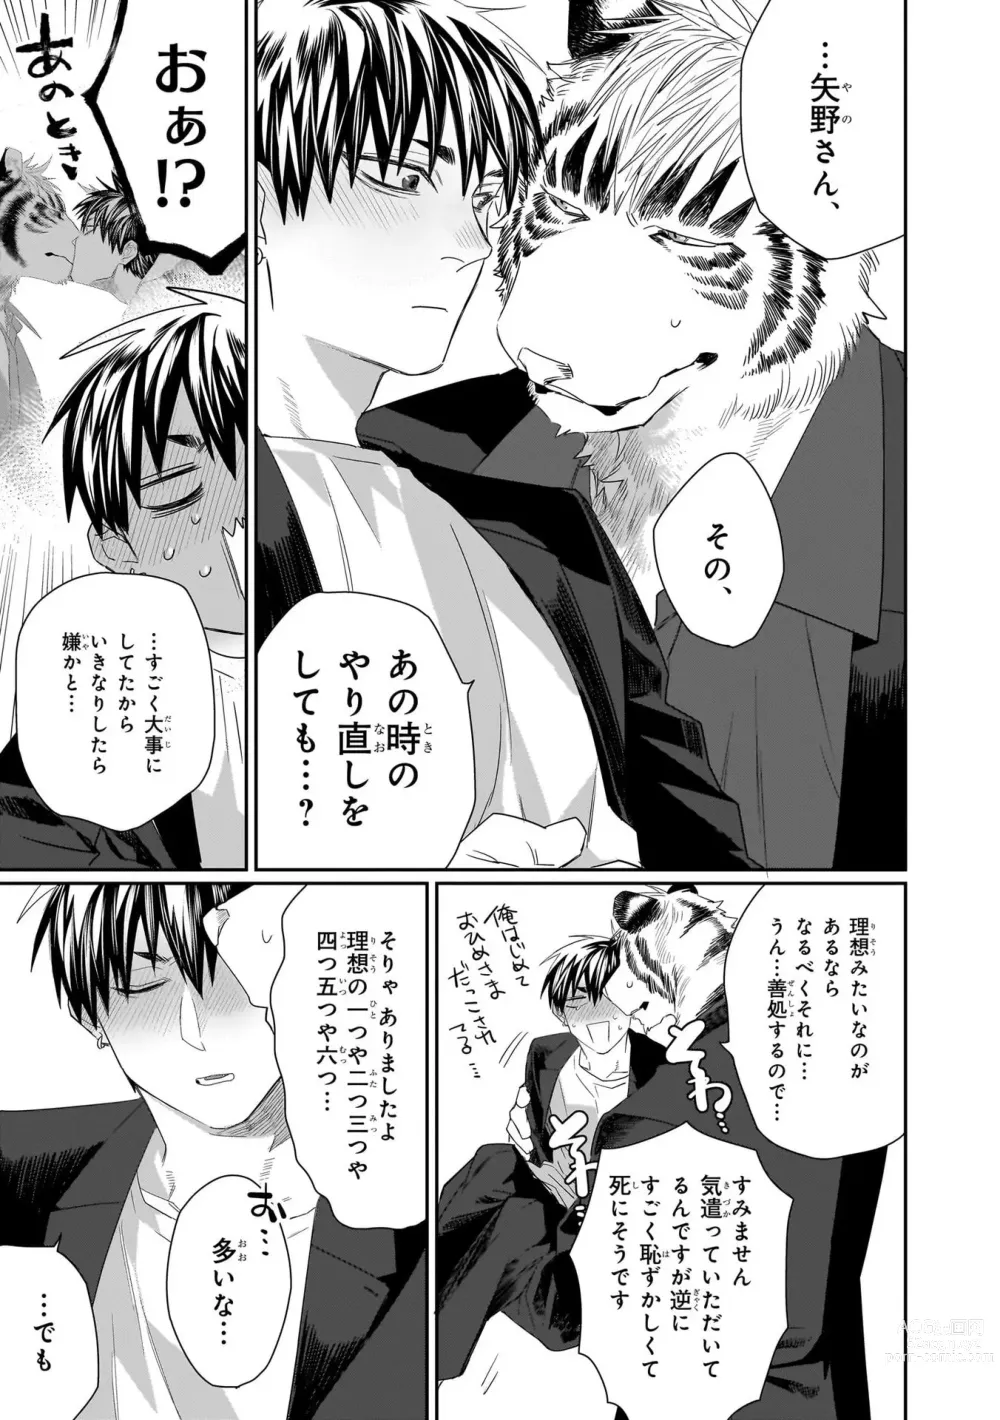 Page 210 of manga Torano Tantei Jimusho e Youkoso 1-5